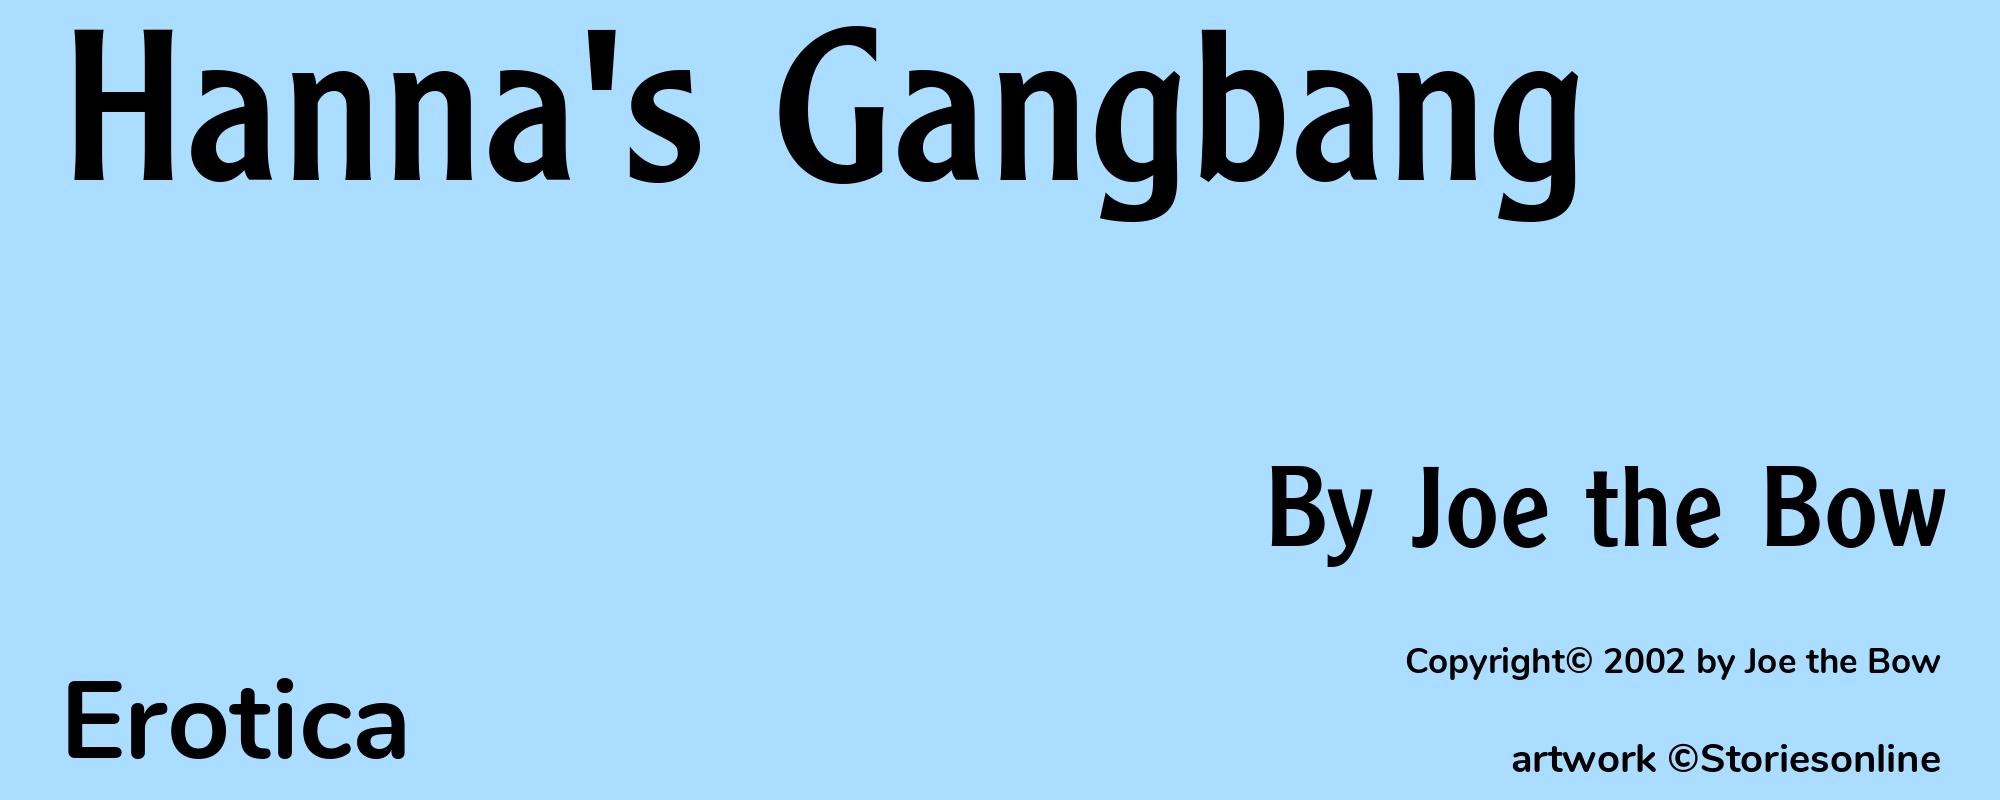 Hanna's Gangbang - Cover